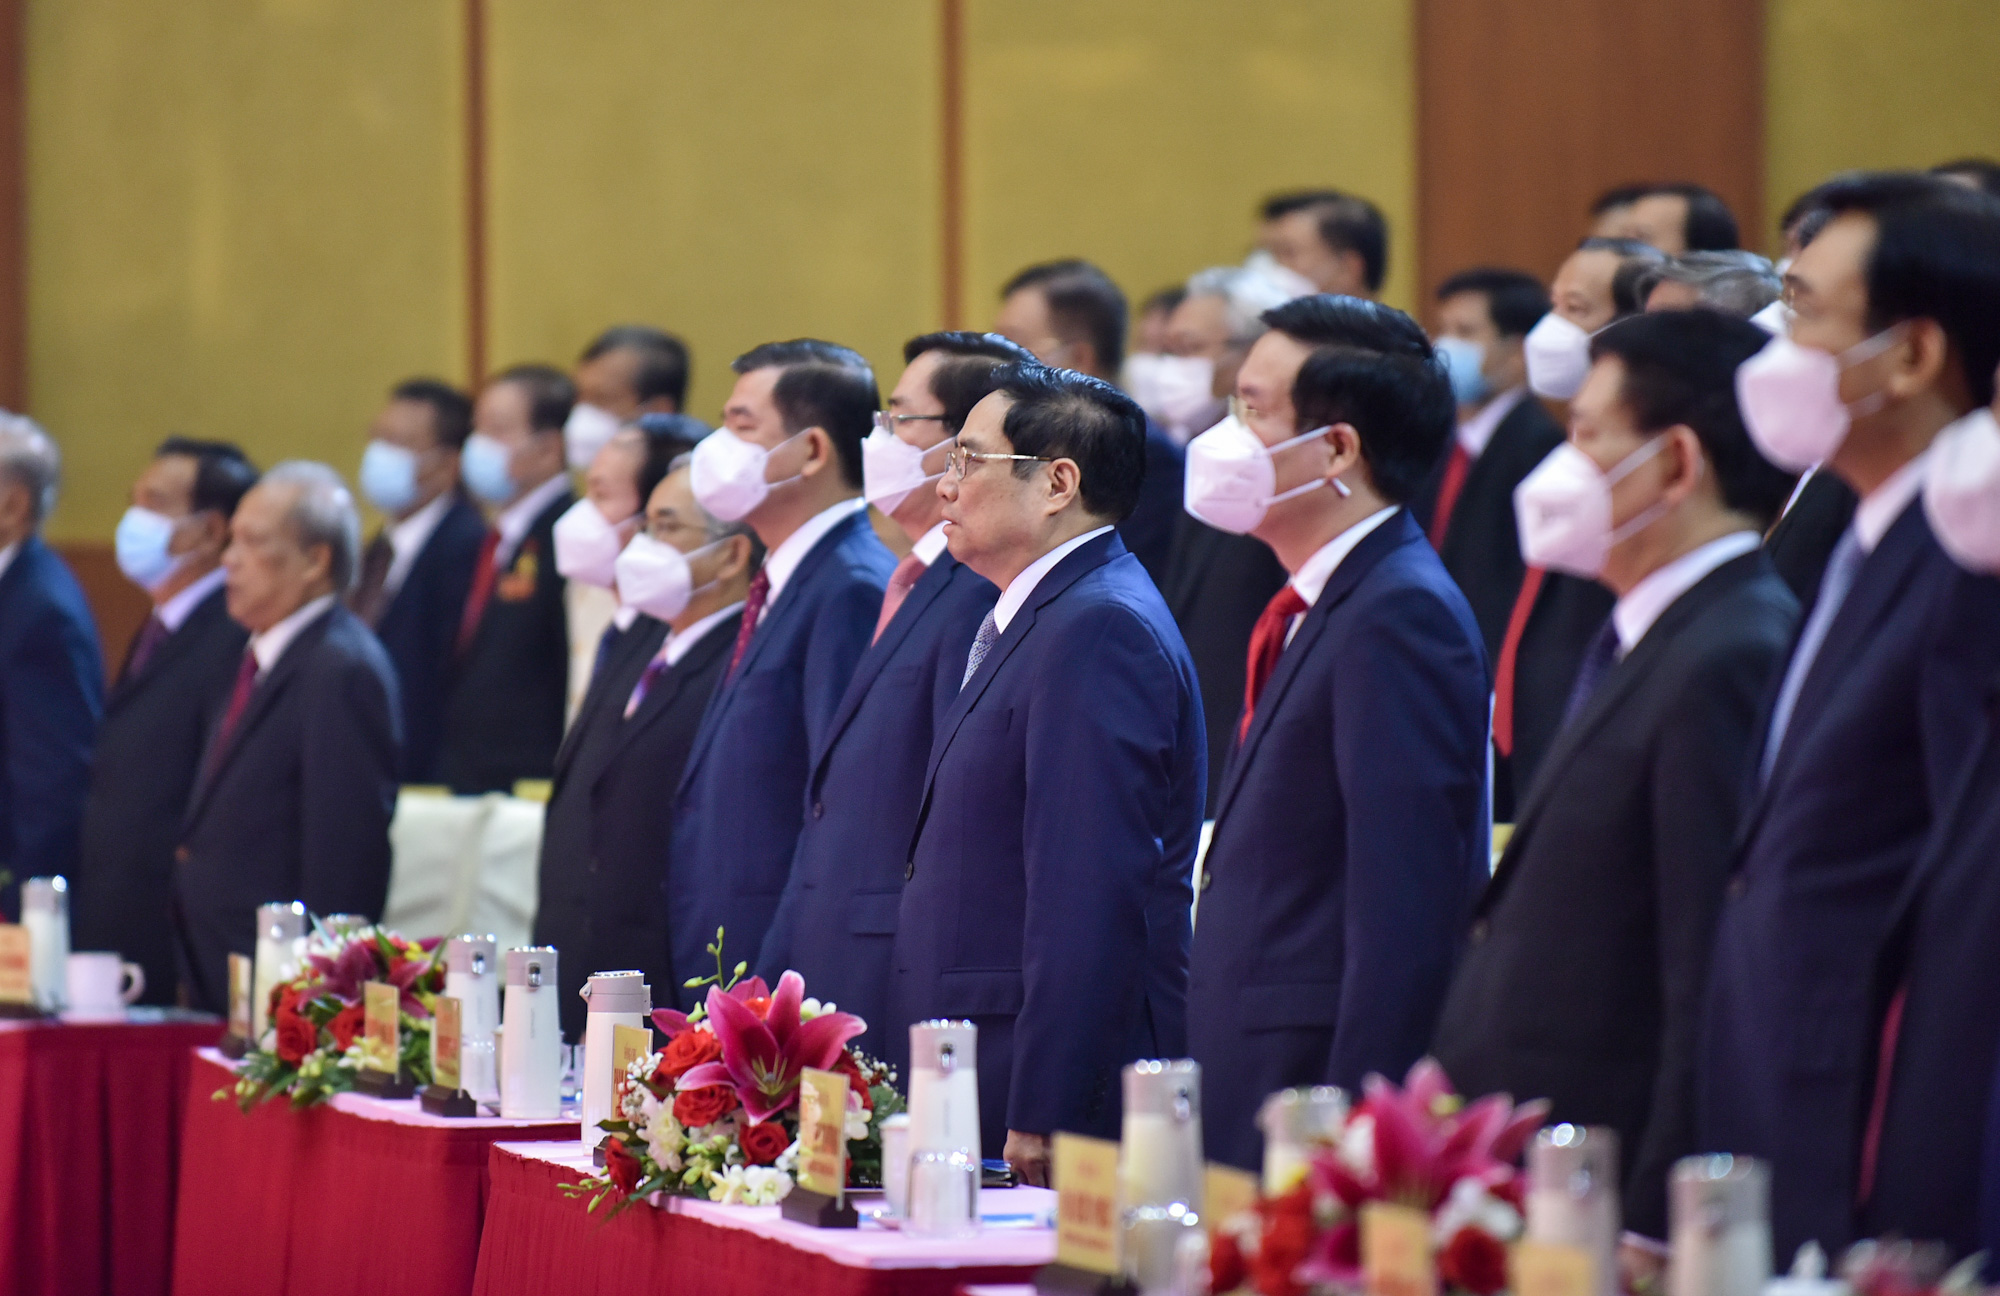 Chùm ảnh: Thủ tướng Phạm Minh Chính dự lễ kỷ niệm 30 năm thành lập tỉnh Bà Rịa-Vũng Tàu